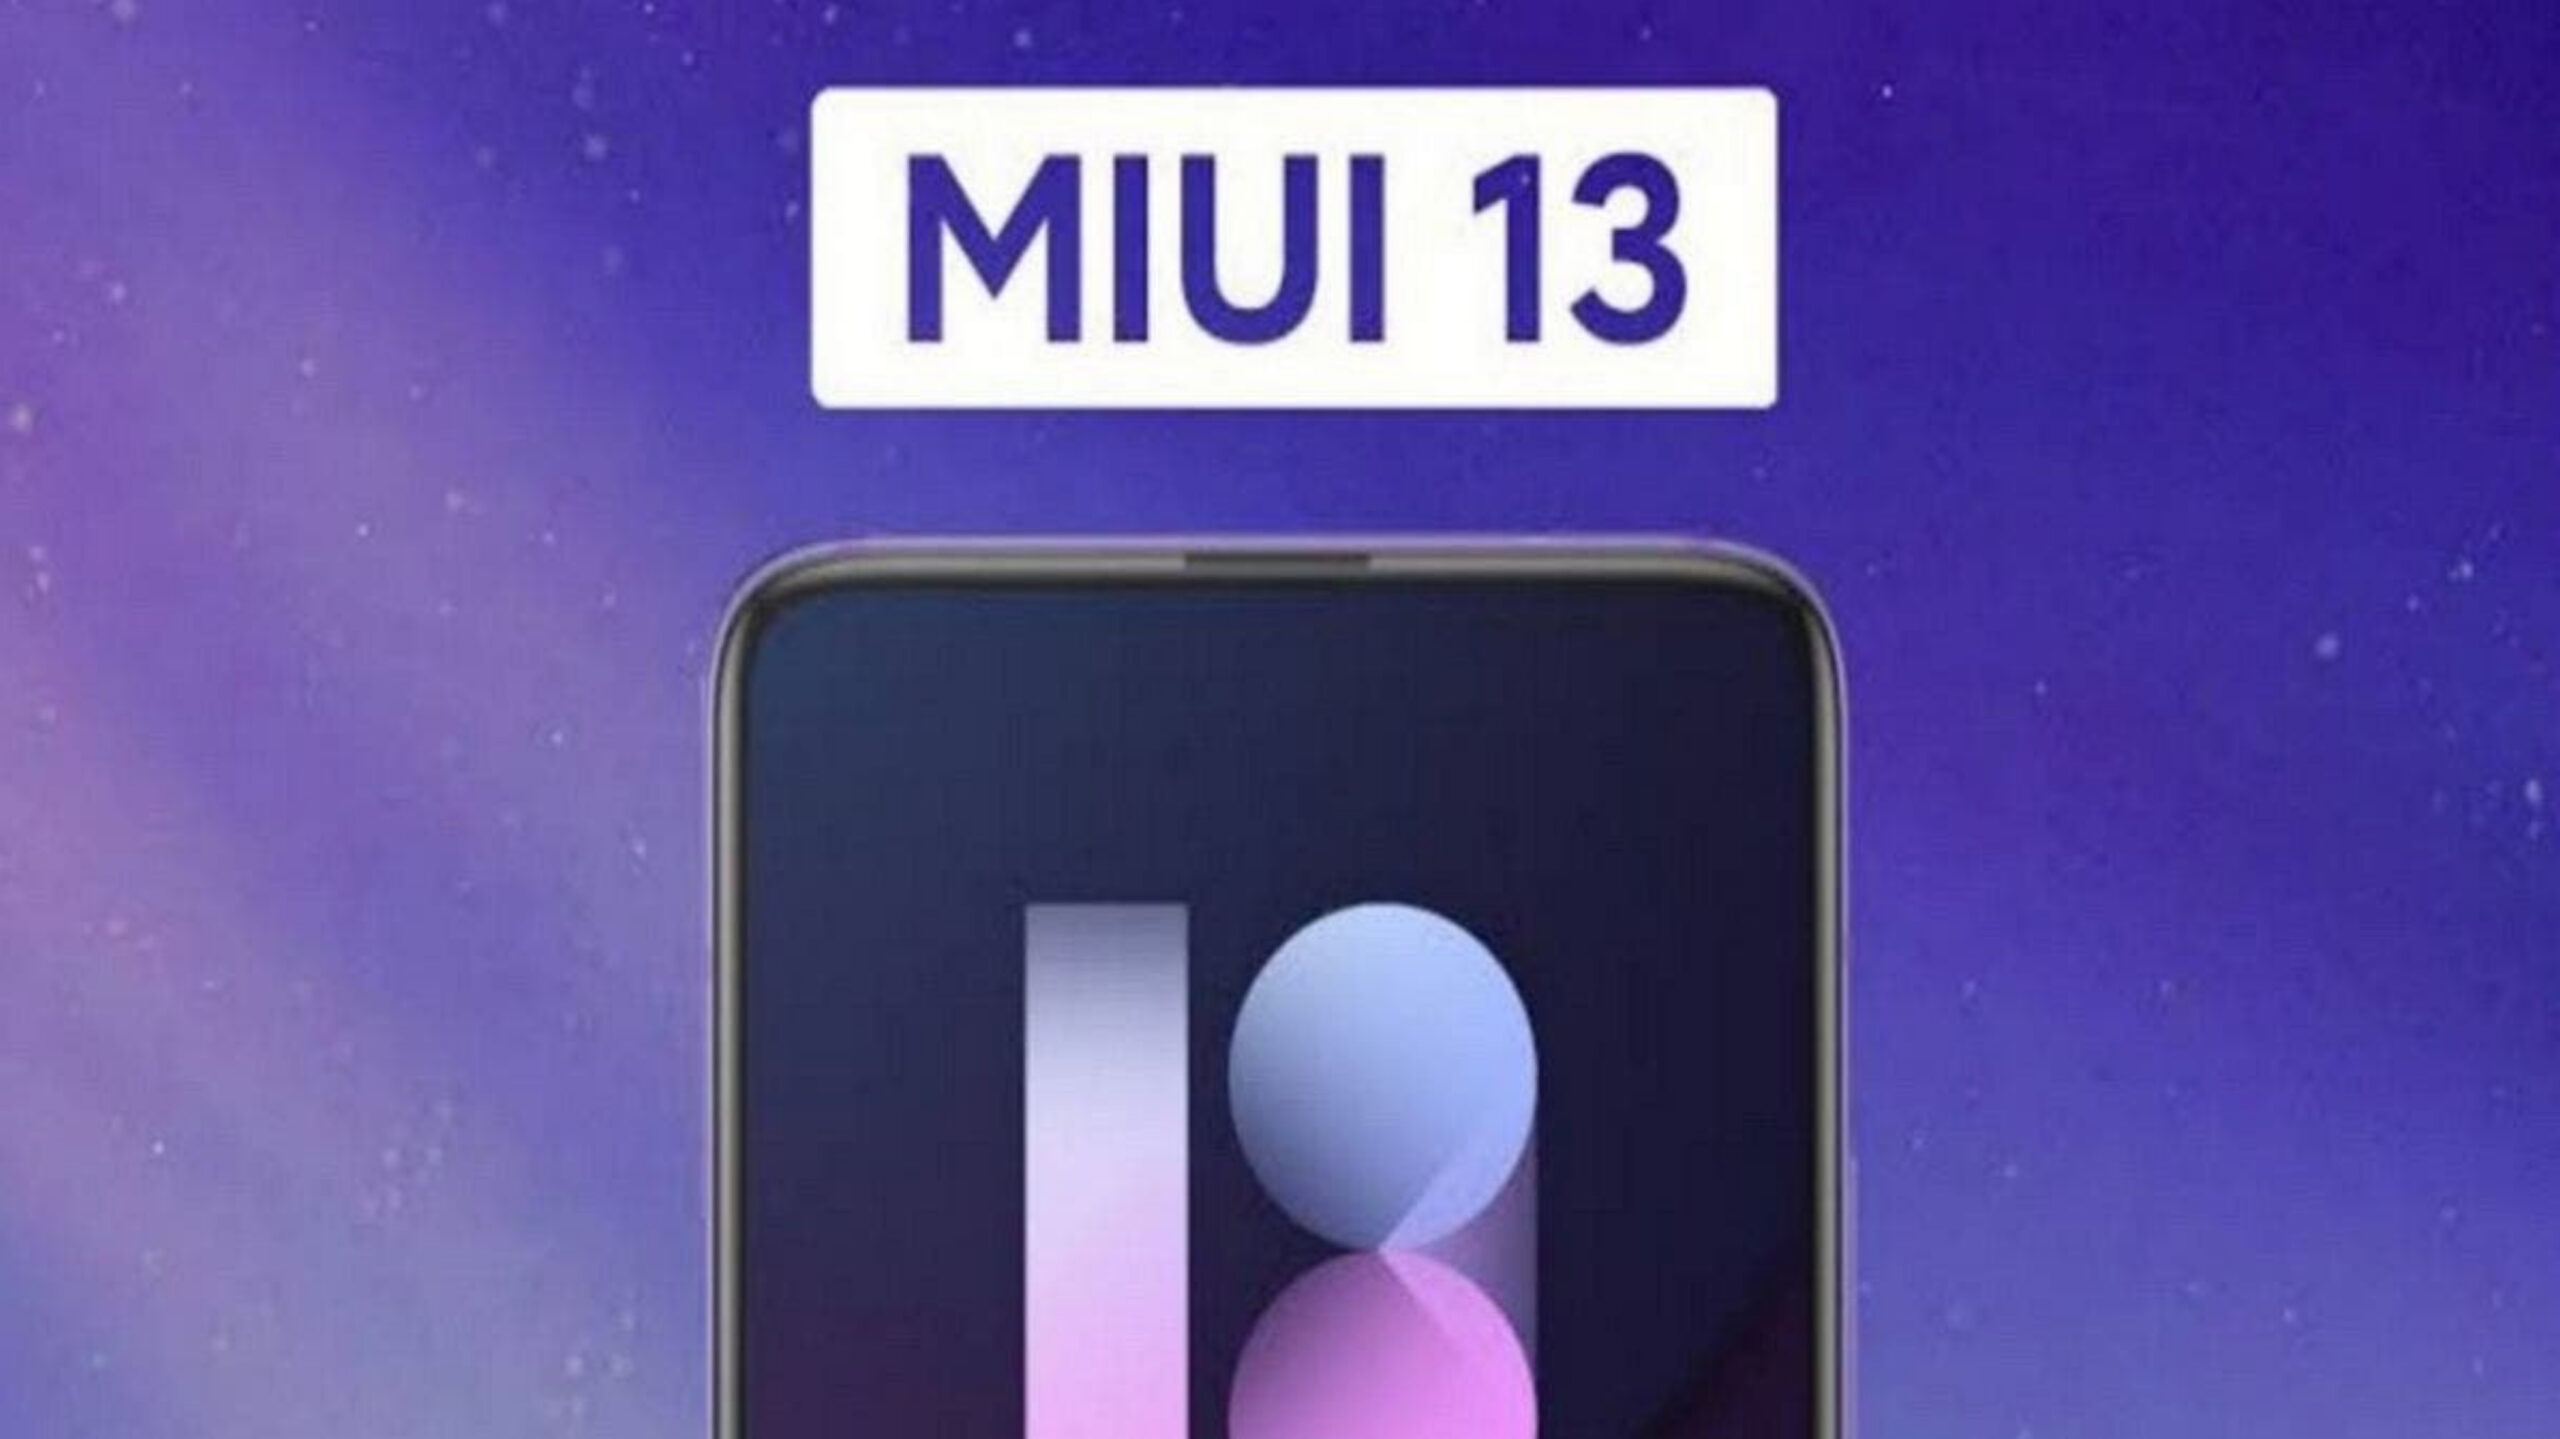 زمان رونمایی MIUI 13 به صورت رسمی، احتمالاً حوالی مرداد تا شهریور خواهد بود